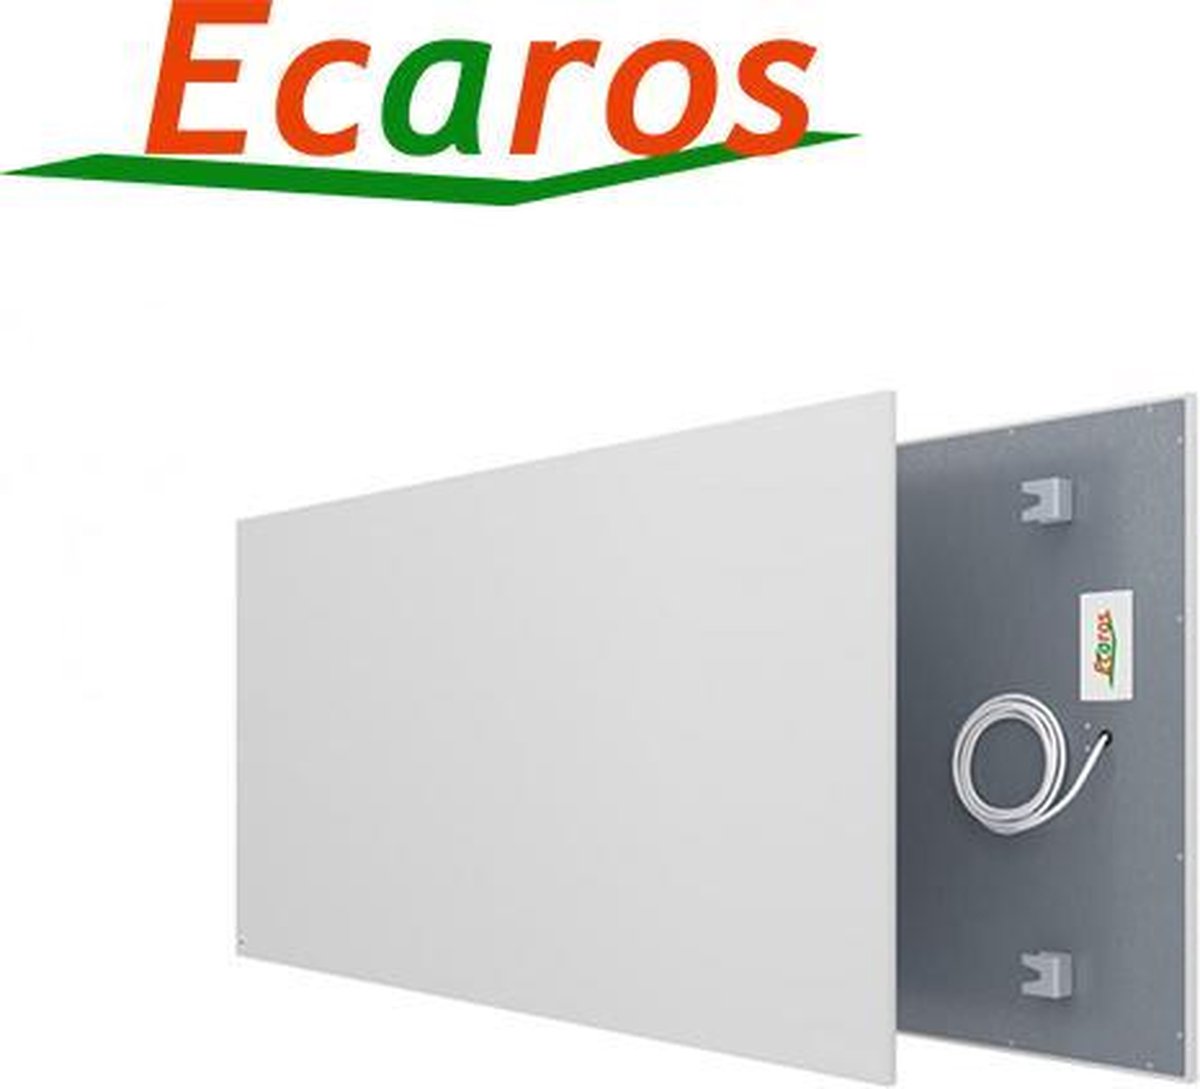 Ecaros 600 Watt hoogwaardig infrarood paneel